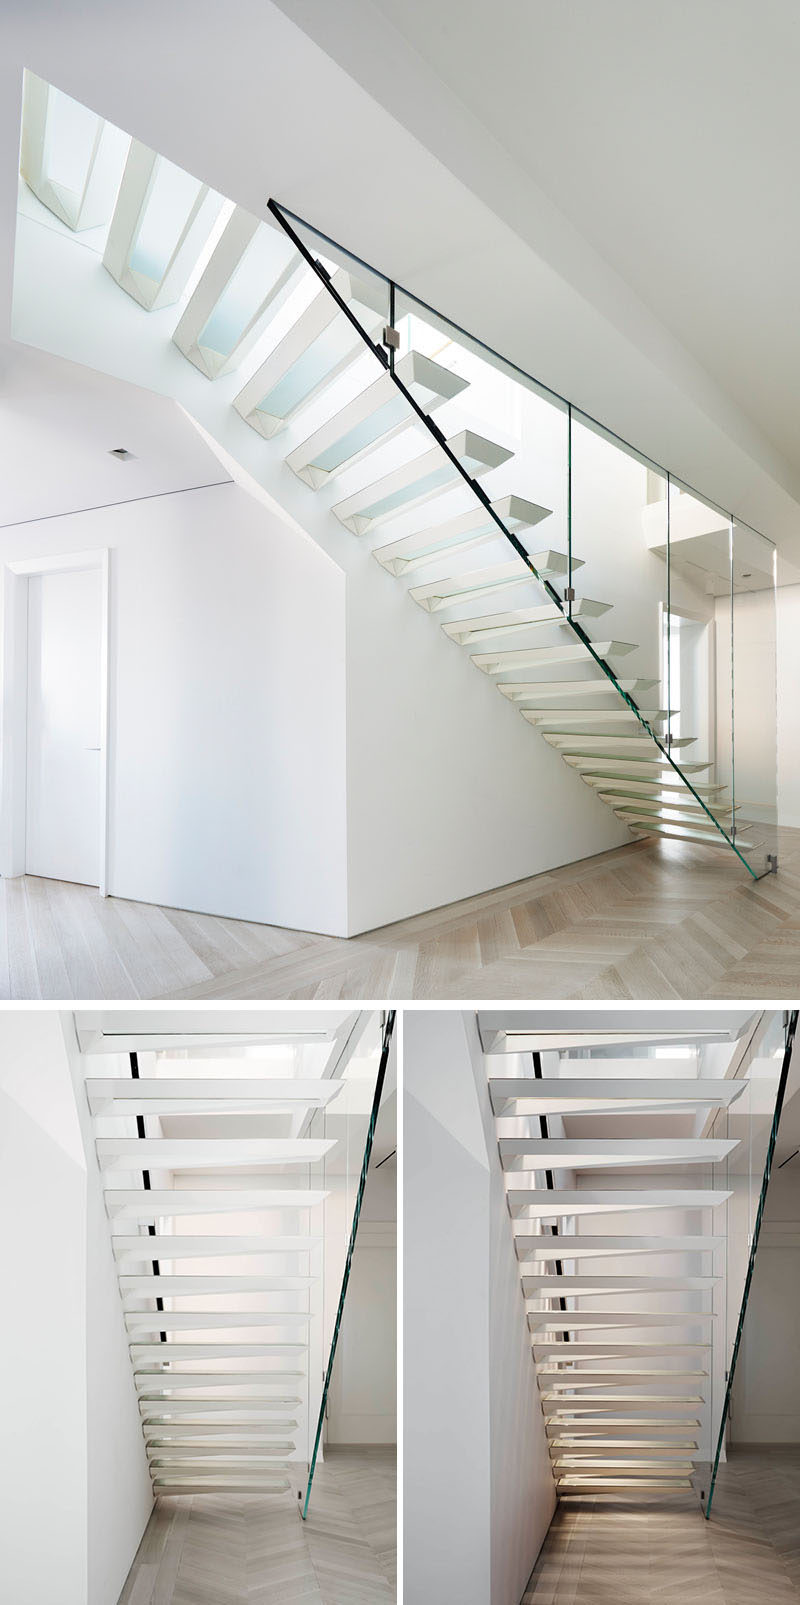 Идея современного дизайна лестницы - эти лестницы были вдохновлены форма складывания бумаги. 